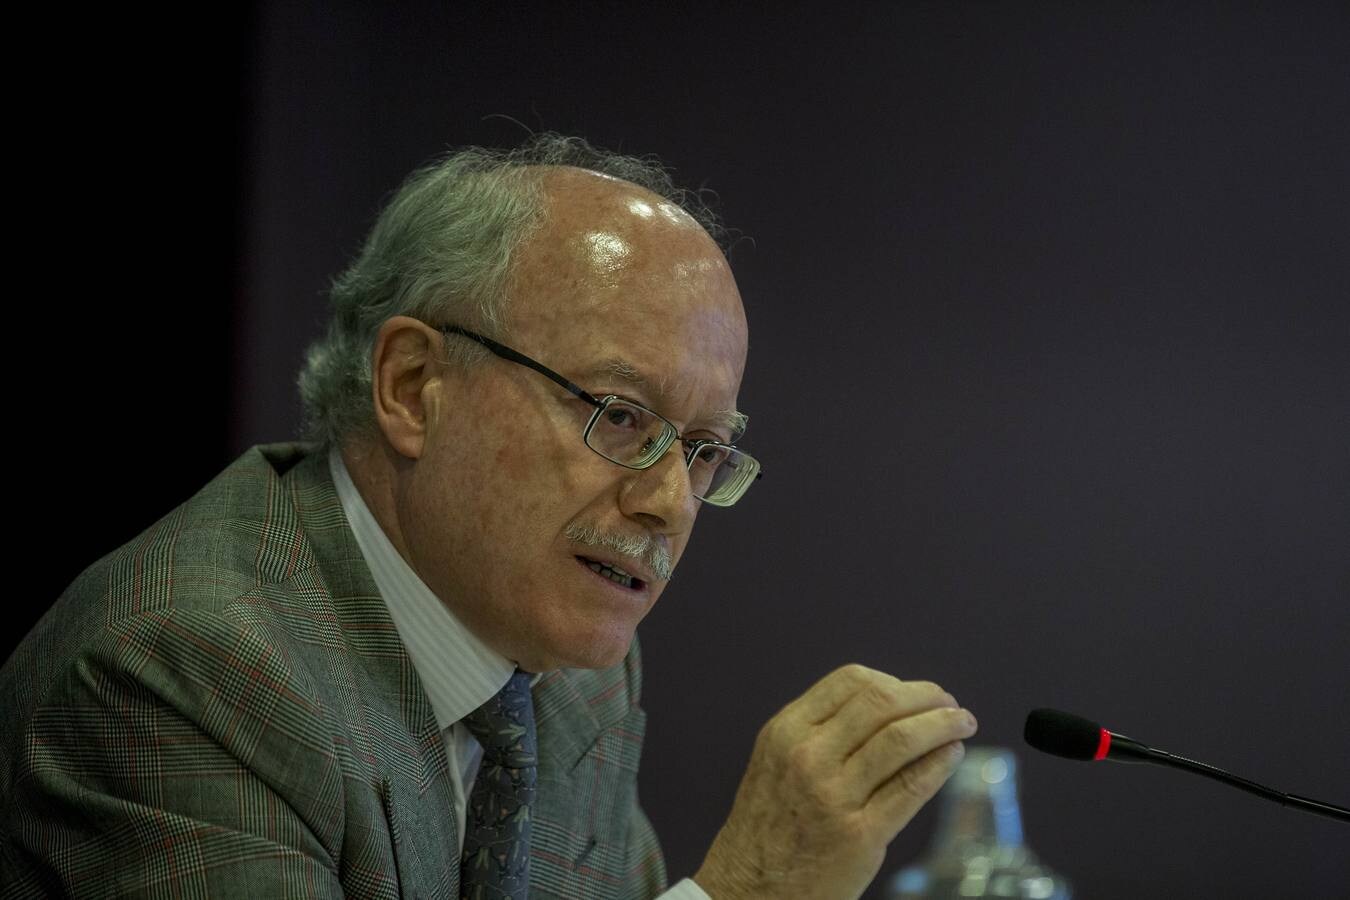 El presidente del Instituto de Estudios Económicos (IEE) ofreció la conferencia 'Situación y perspectivas de la economía española'